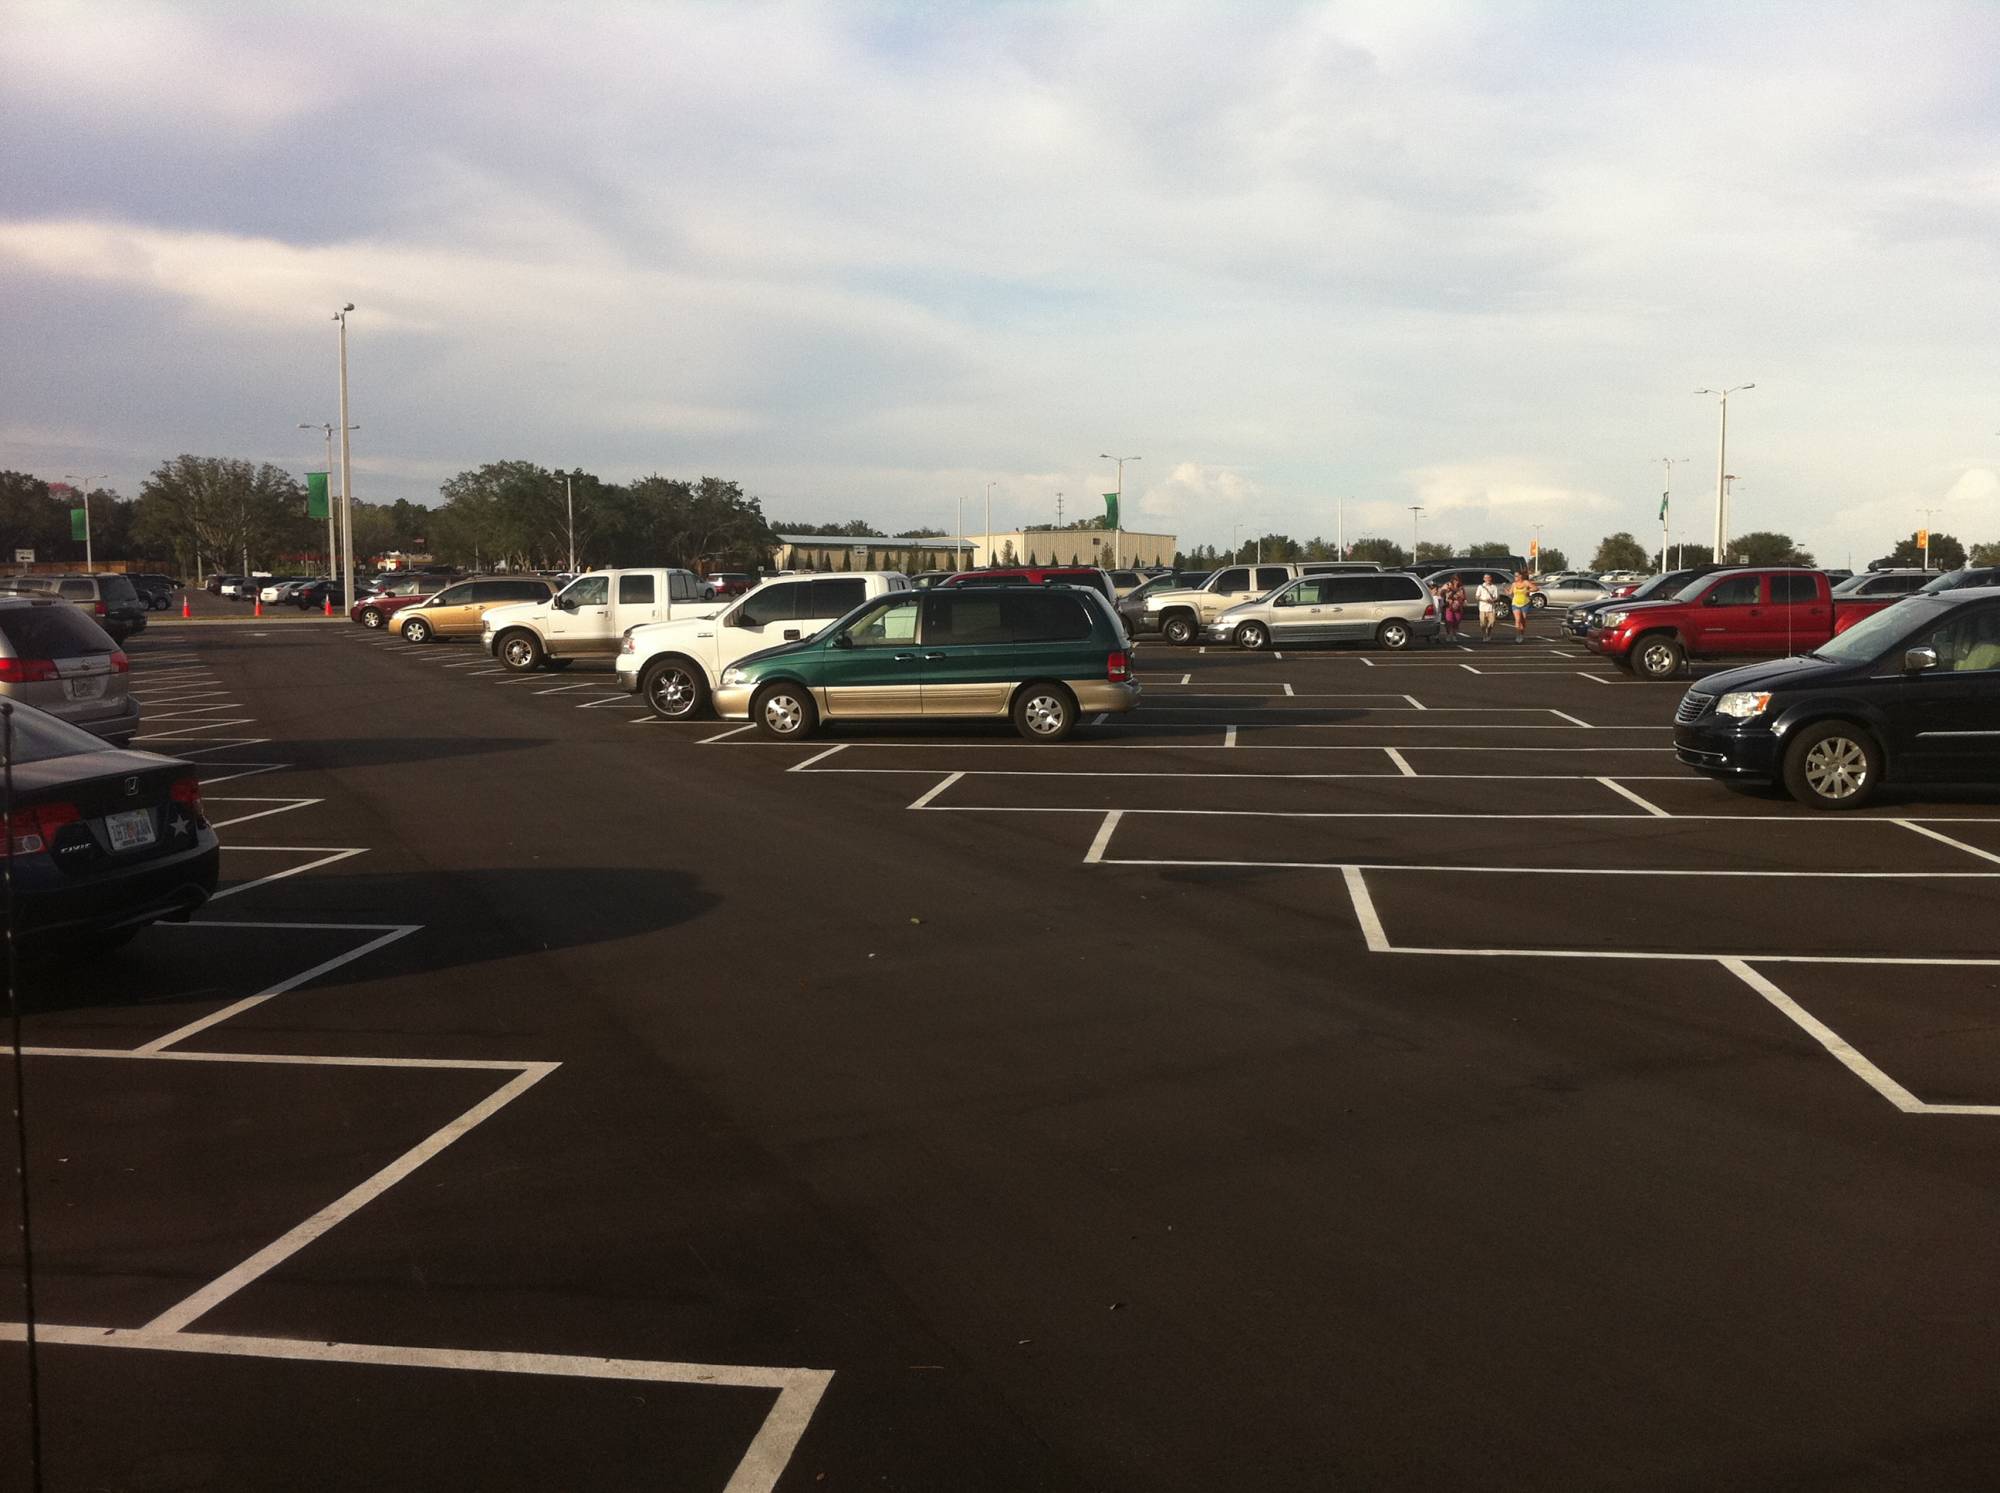 Parking Lot at LEGOLAND Florida